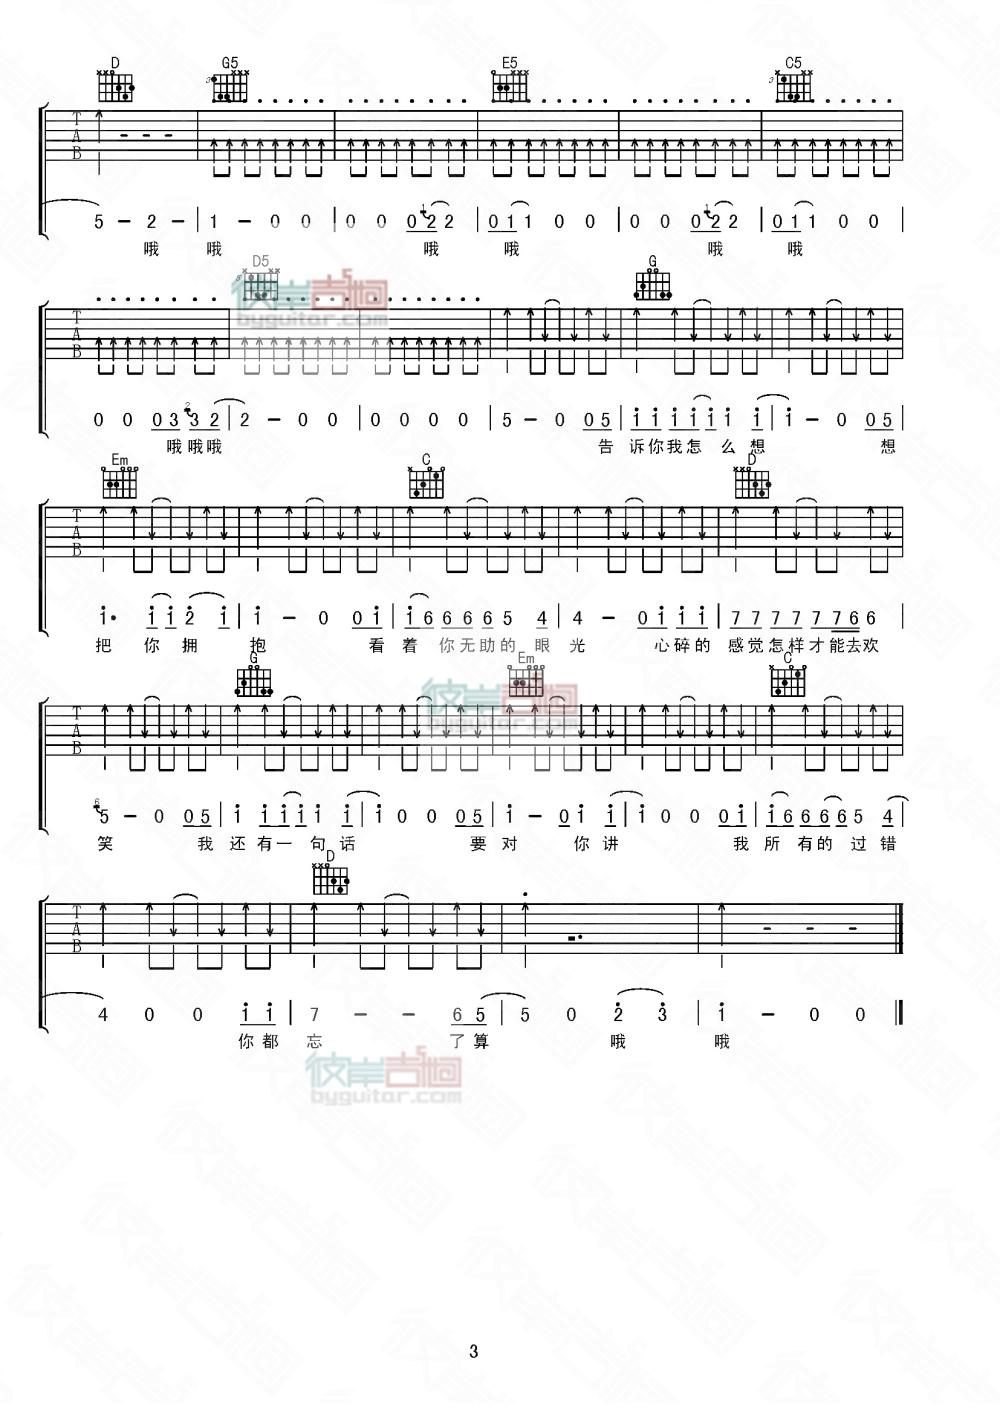 指南针乐队《无法逃脱》吉他谱-Guitar Music Score